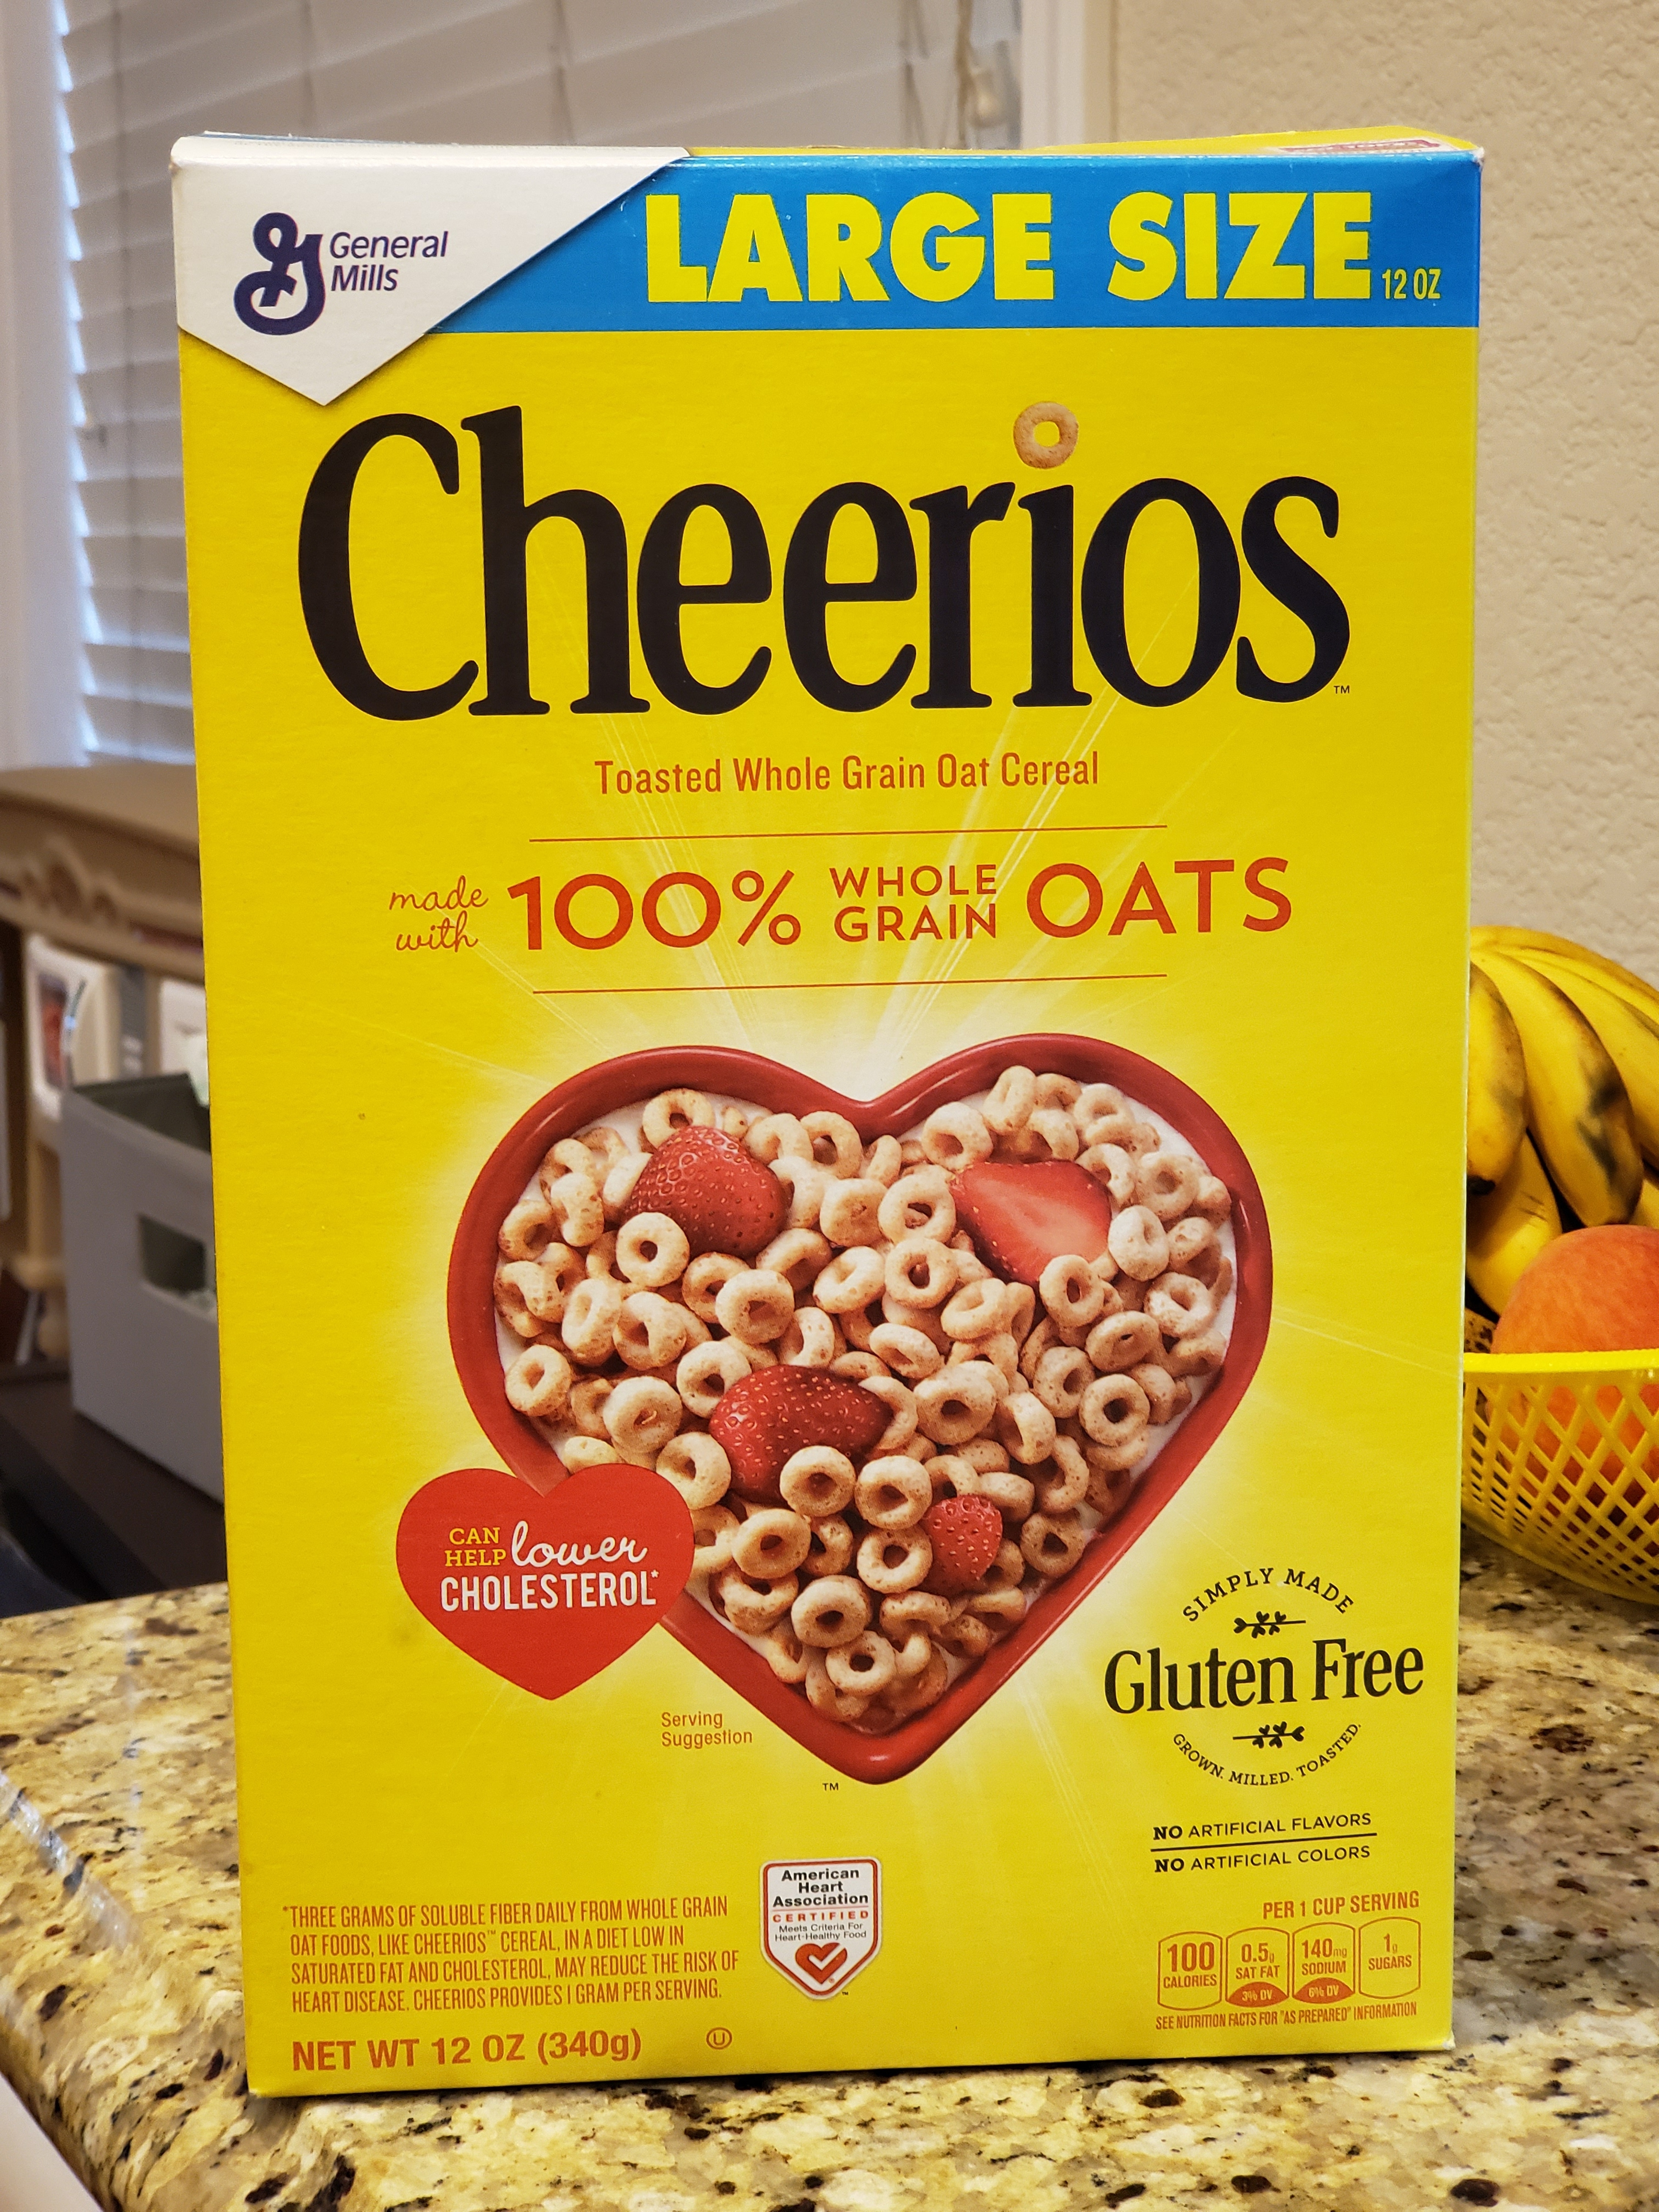 Close-up of a box of Cheerios